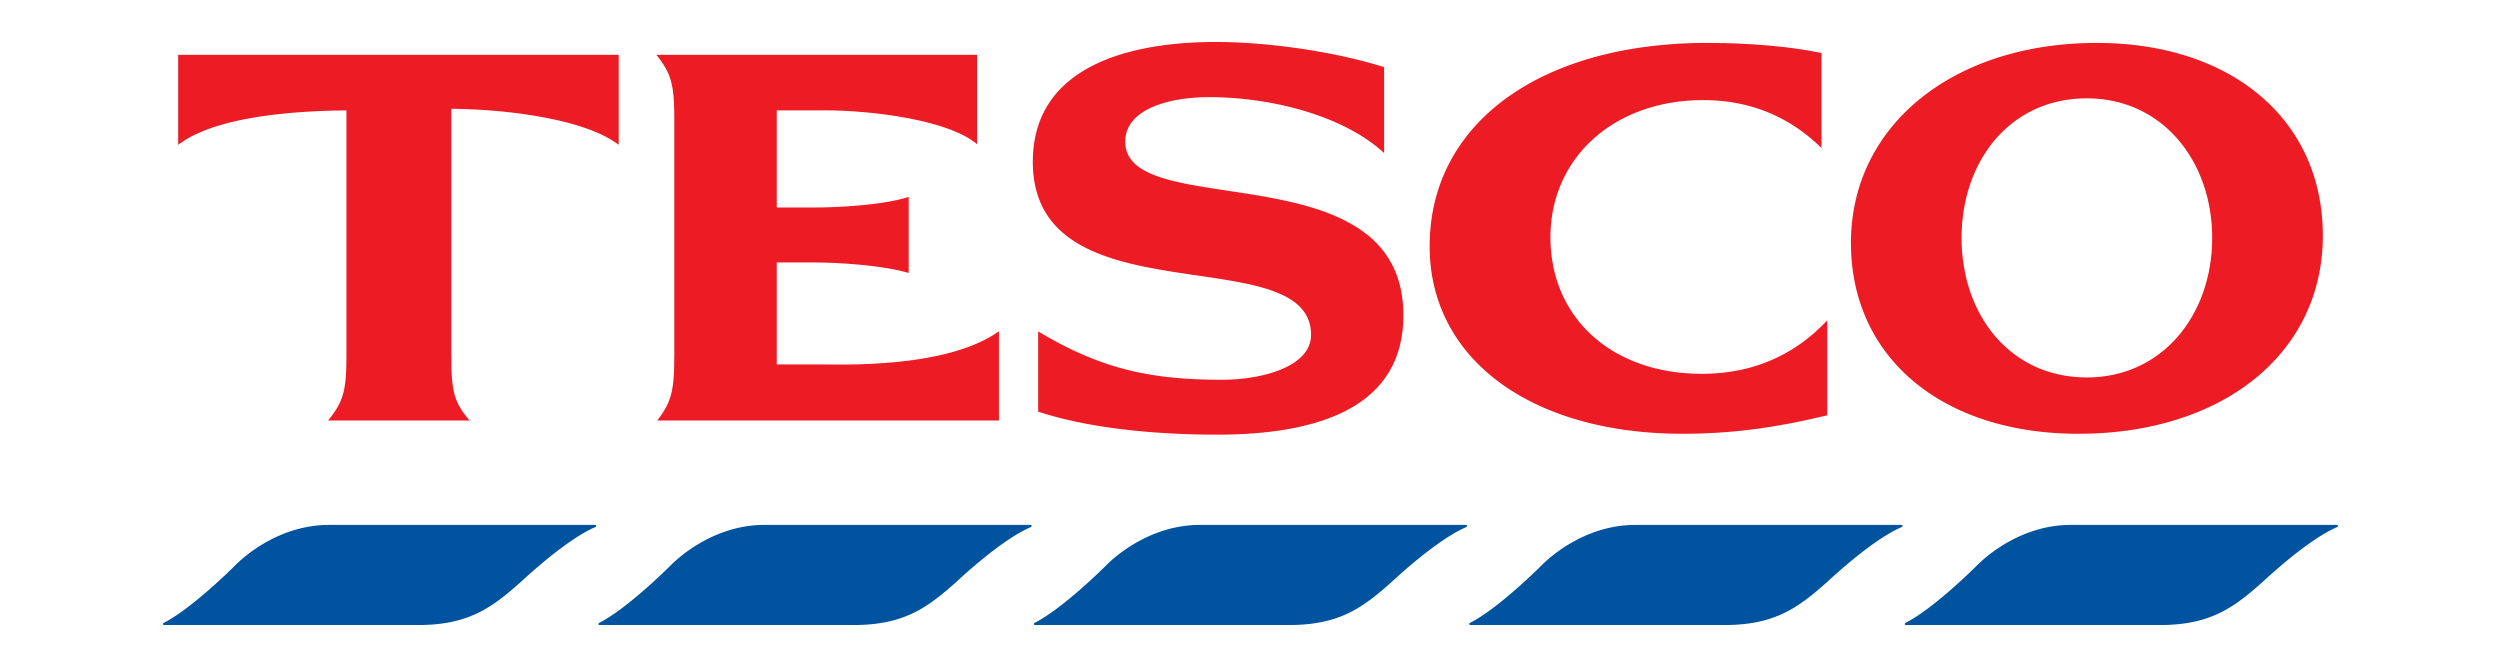 Tesco Logo Transparent Background